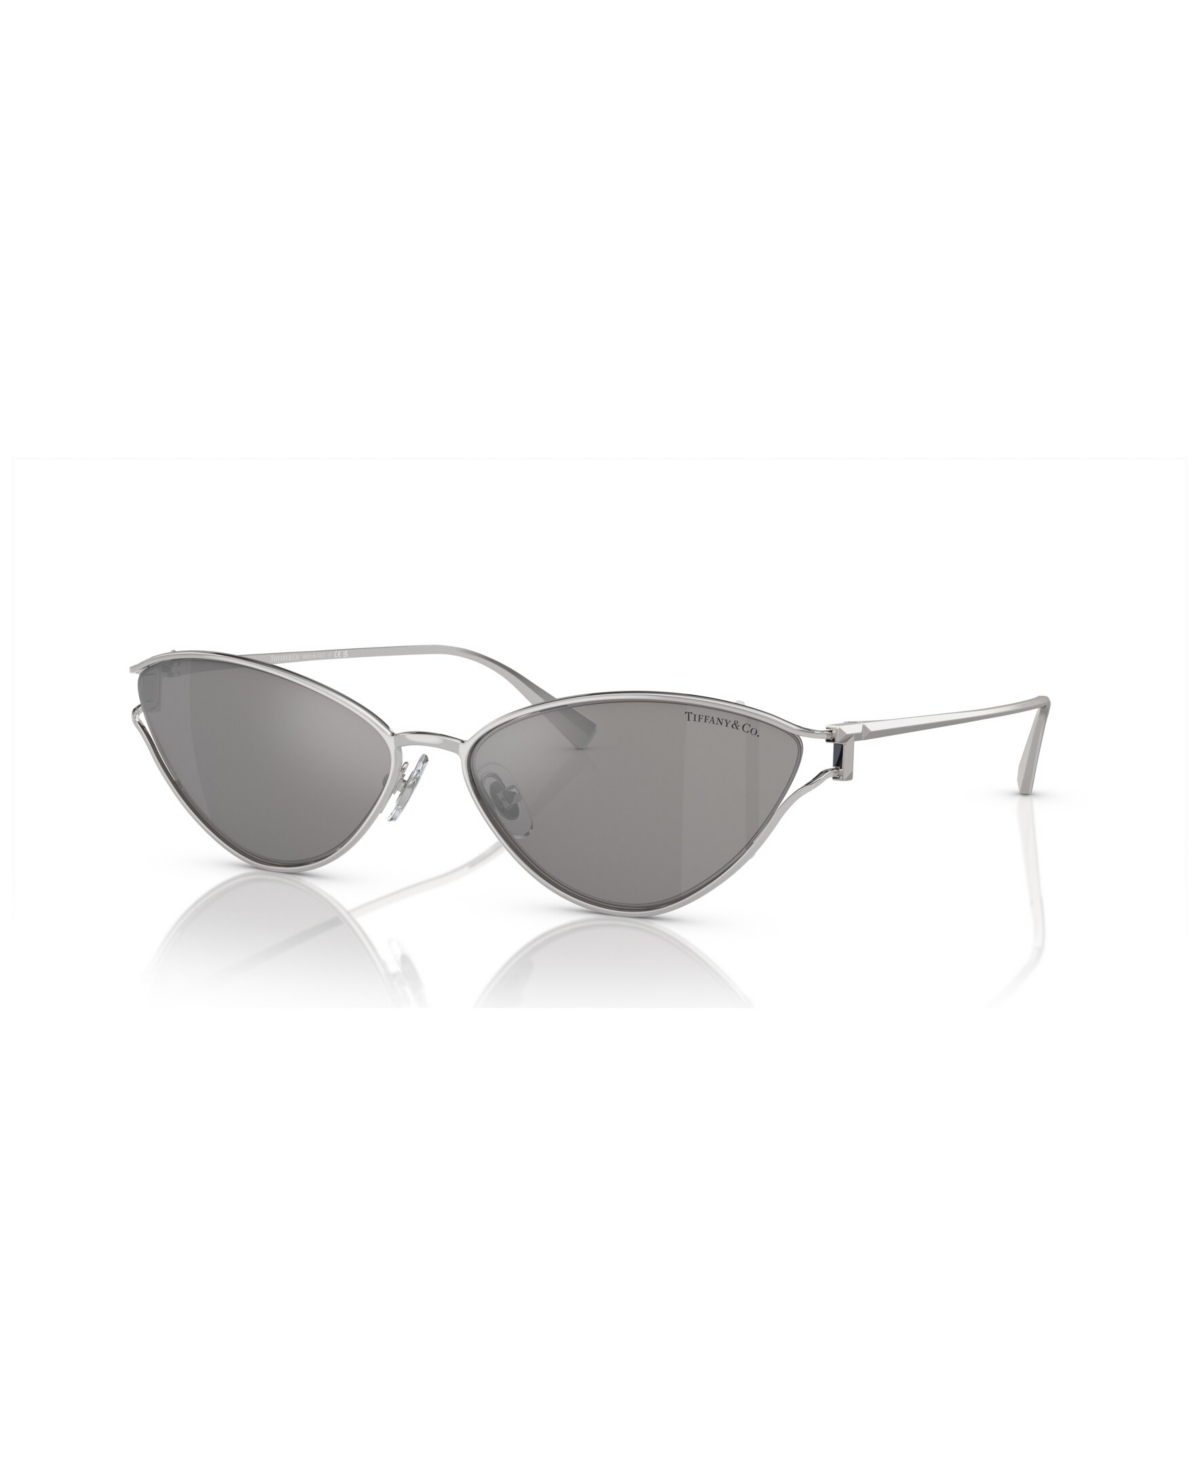 Tiffany & Co Women's Sunglasses, Gradient Tf3095 In Silver,multi